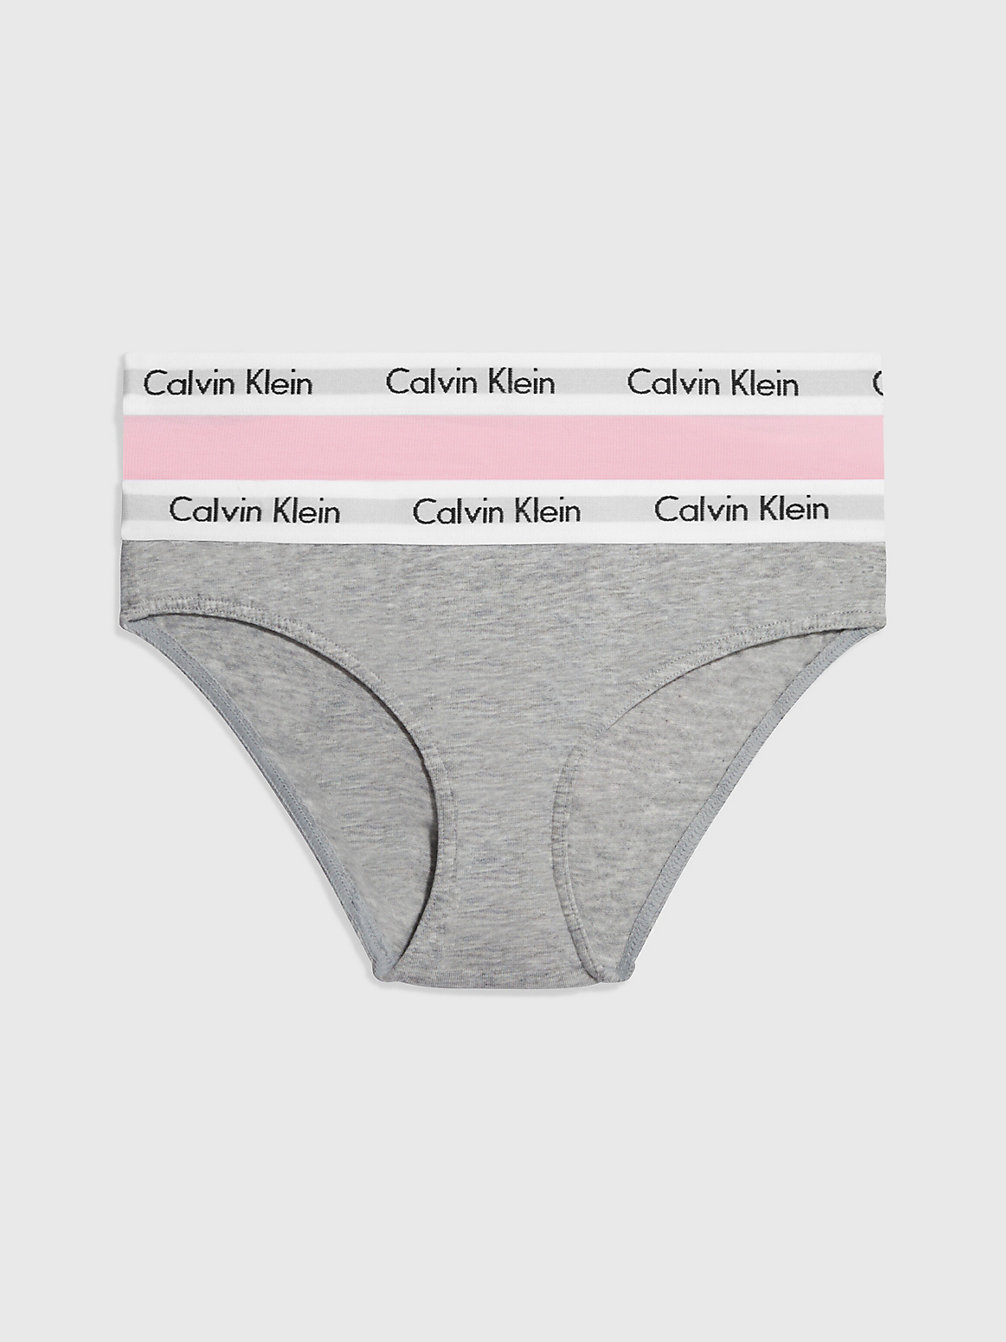 GREY HTR/UNIQUE Lot De 2 Culottes Pour Fille - Modern Cotton undefined filles Calvin Klein